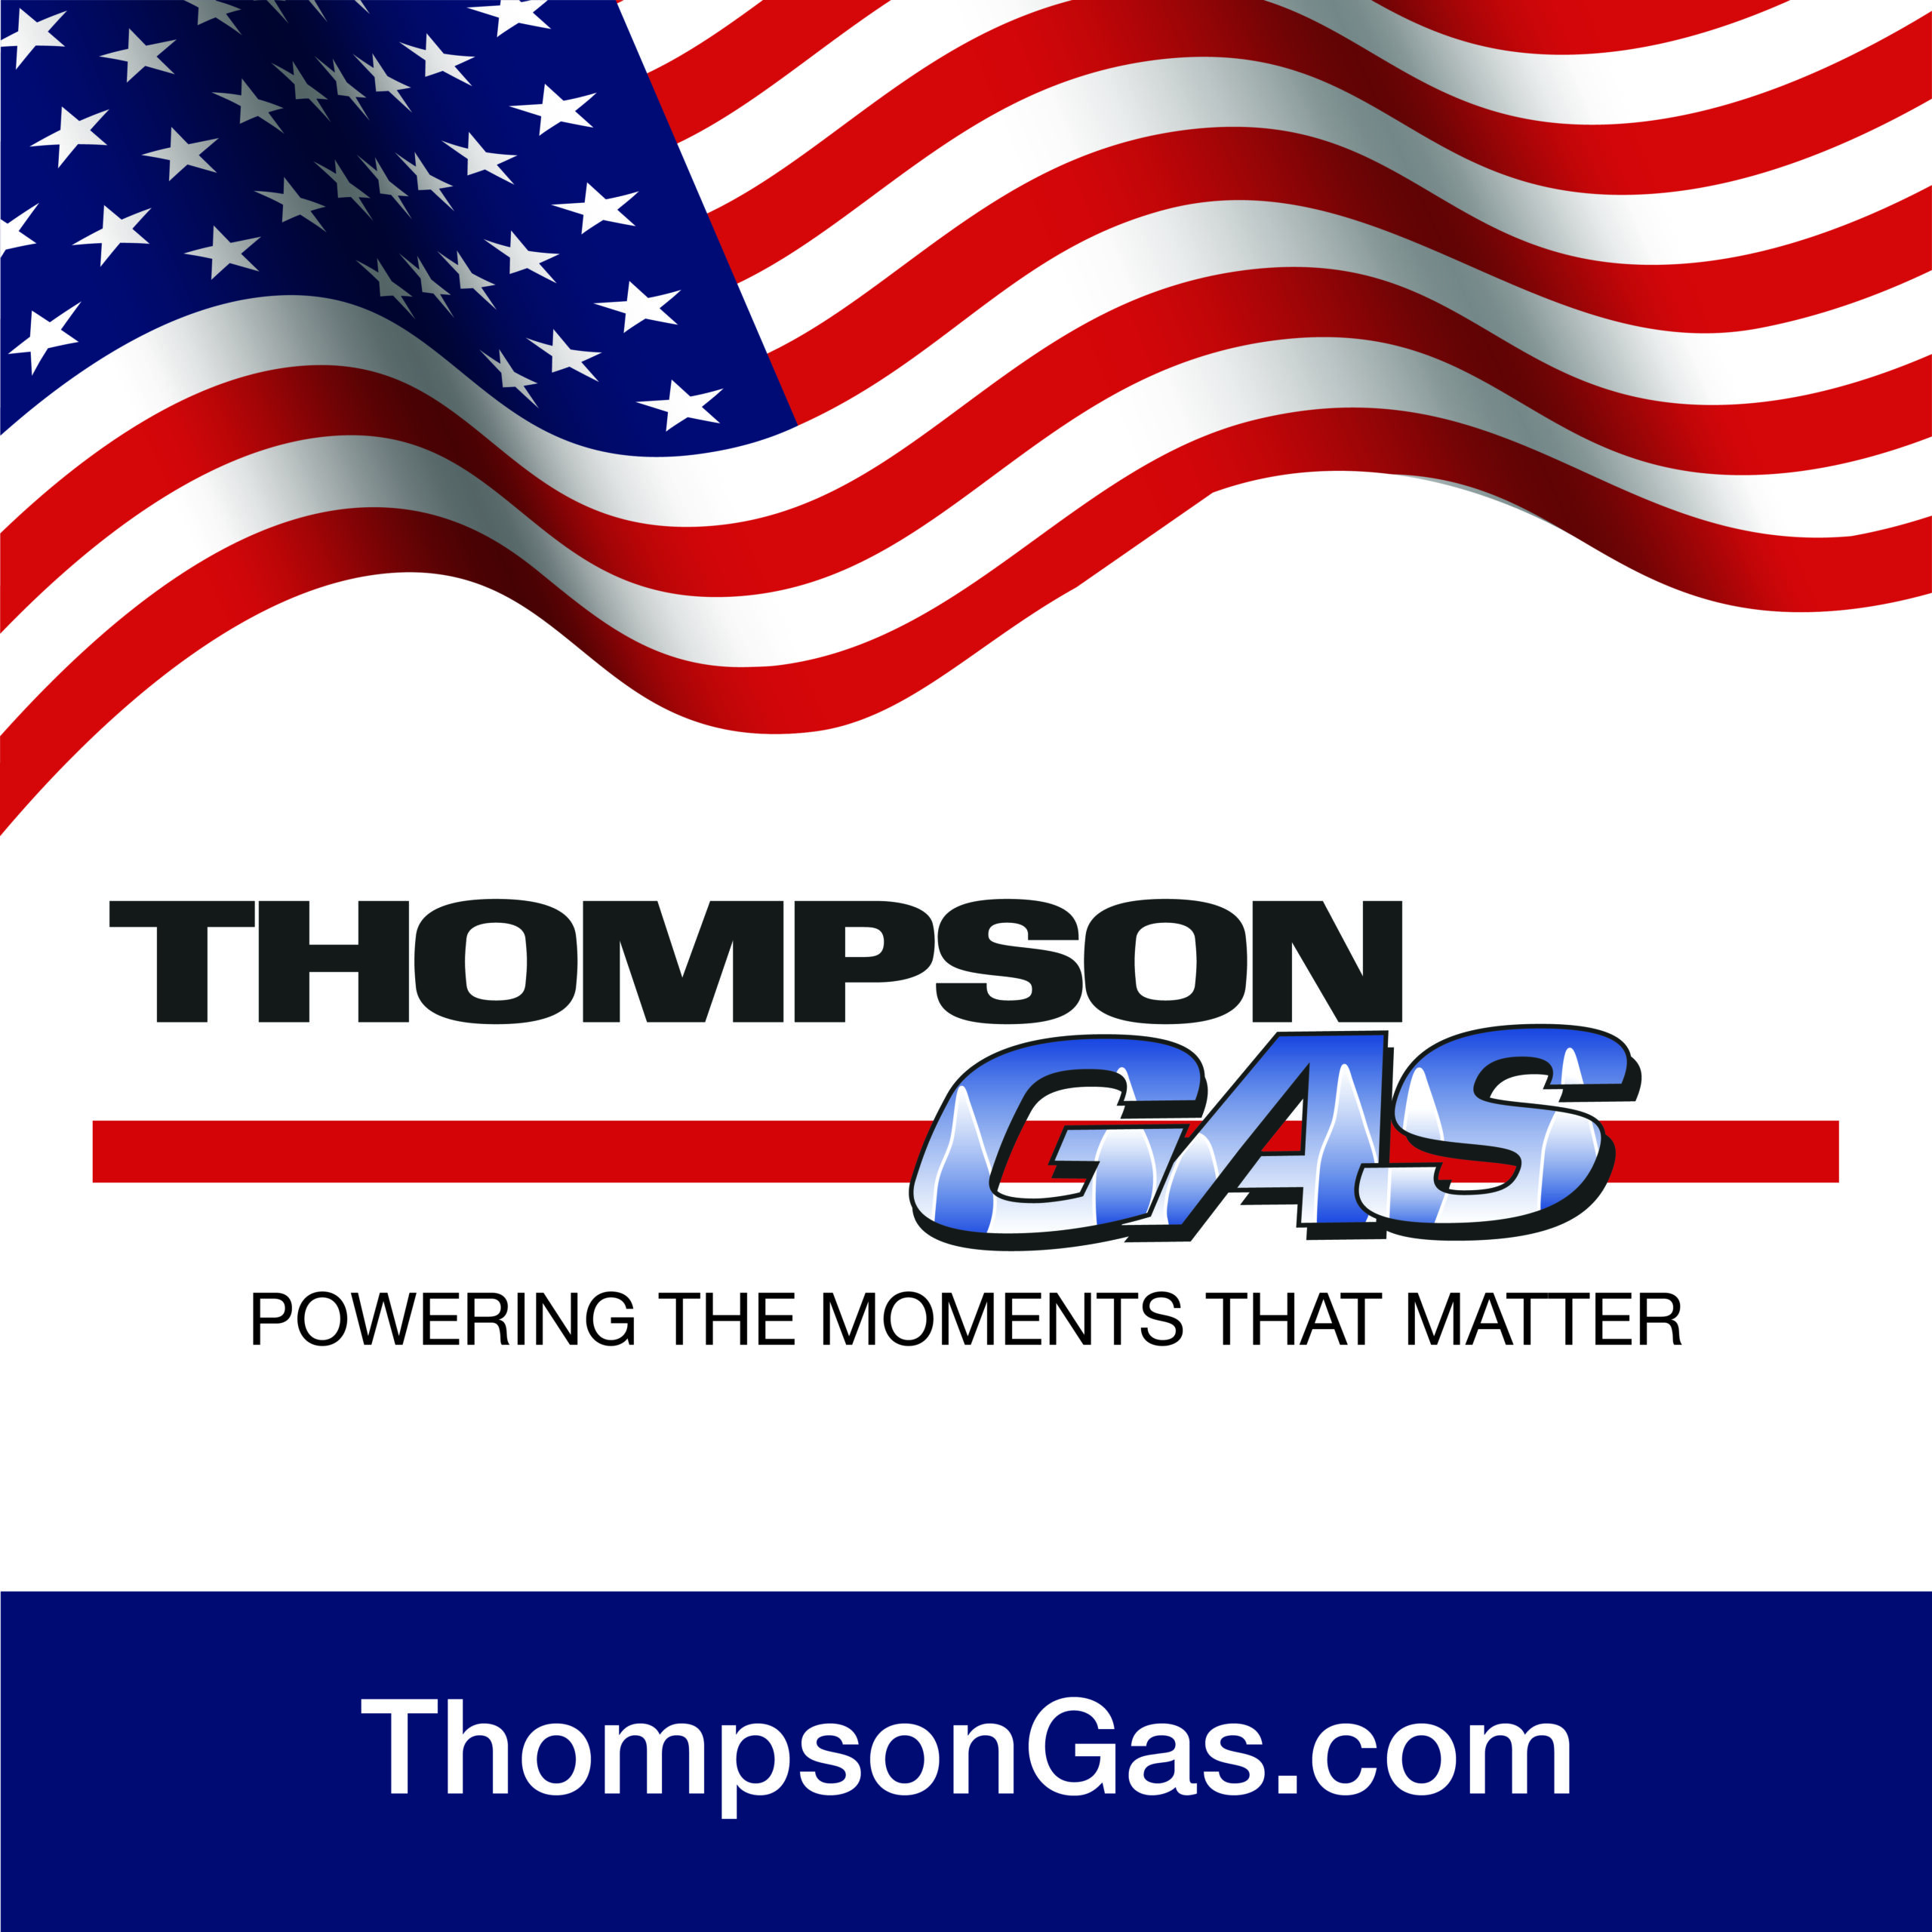 Thompson Gas - Propane